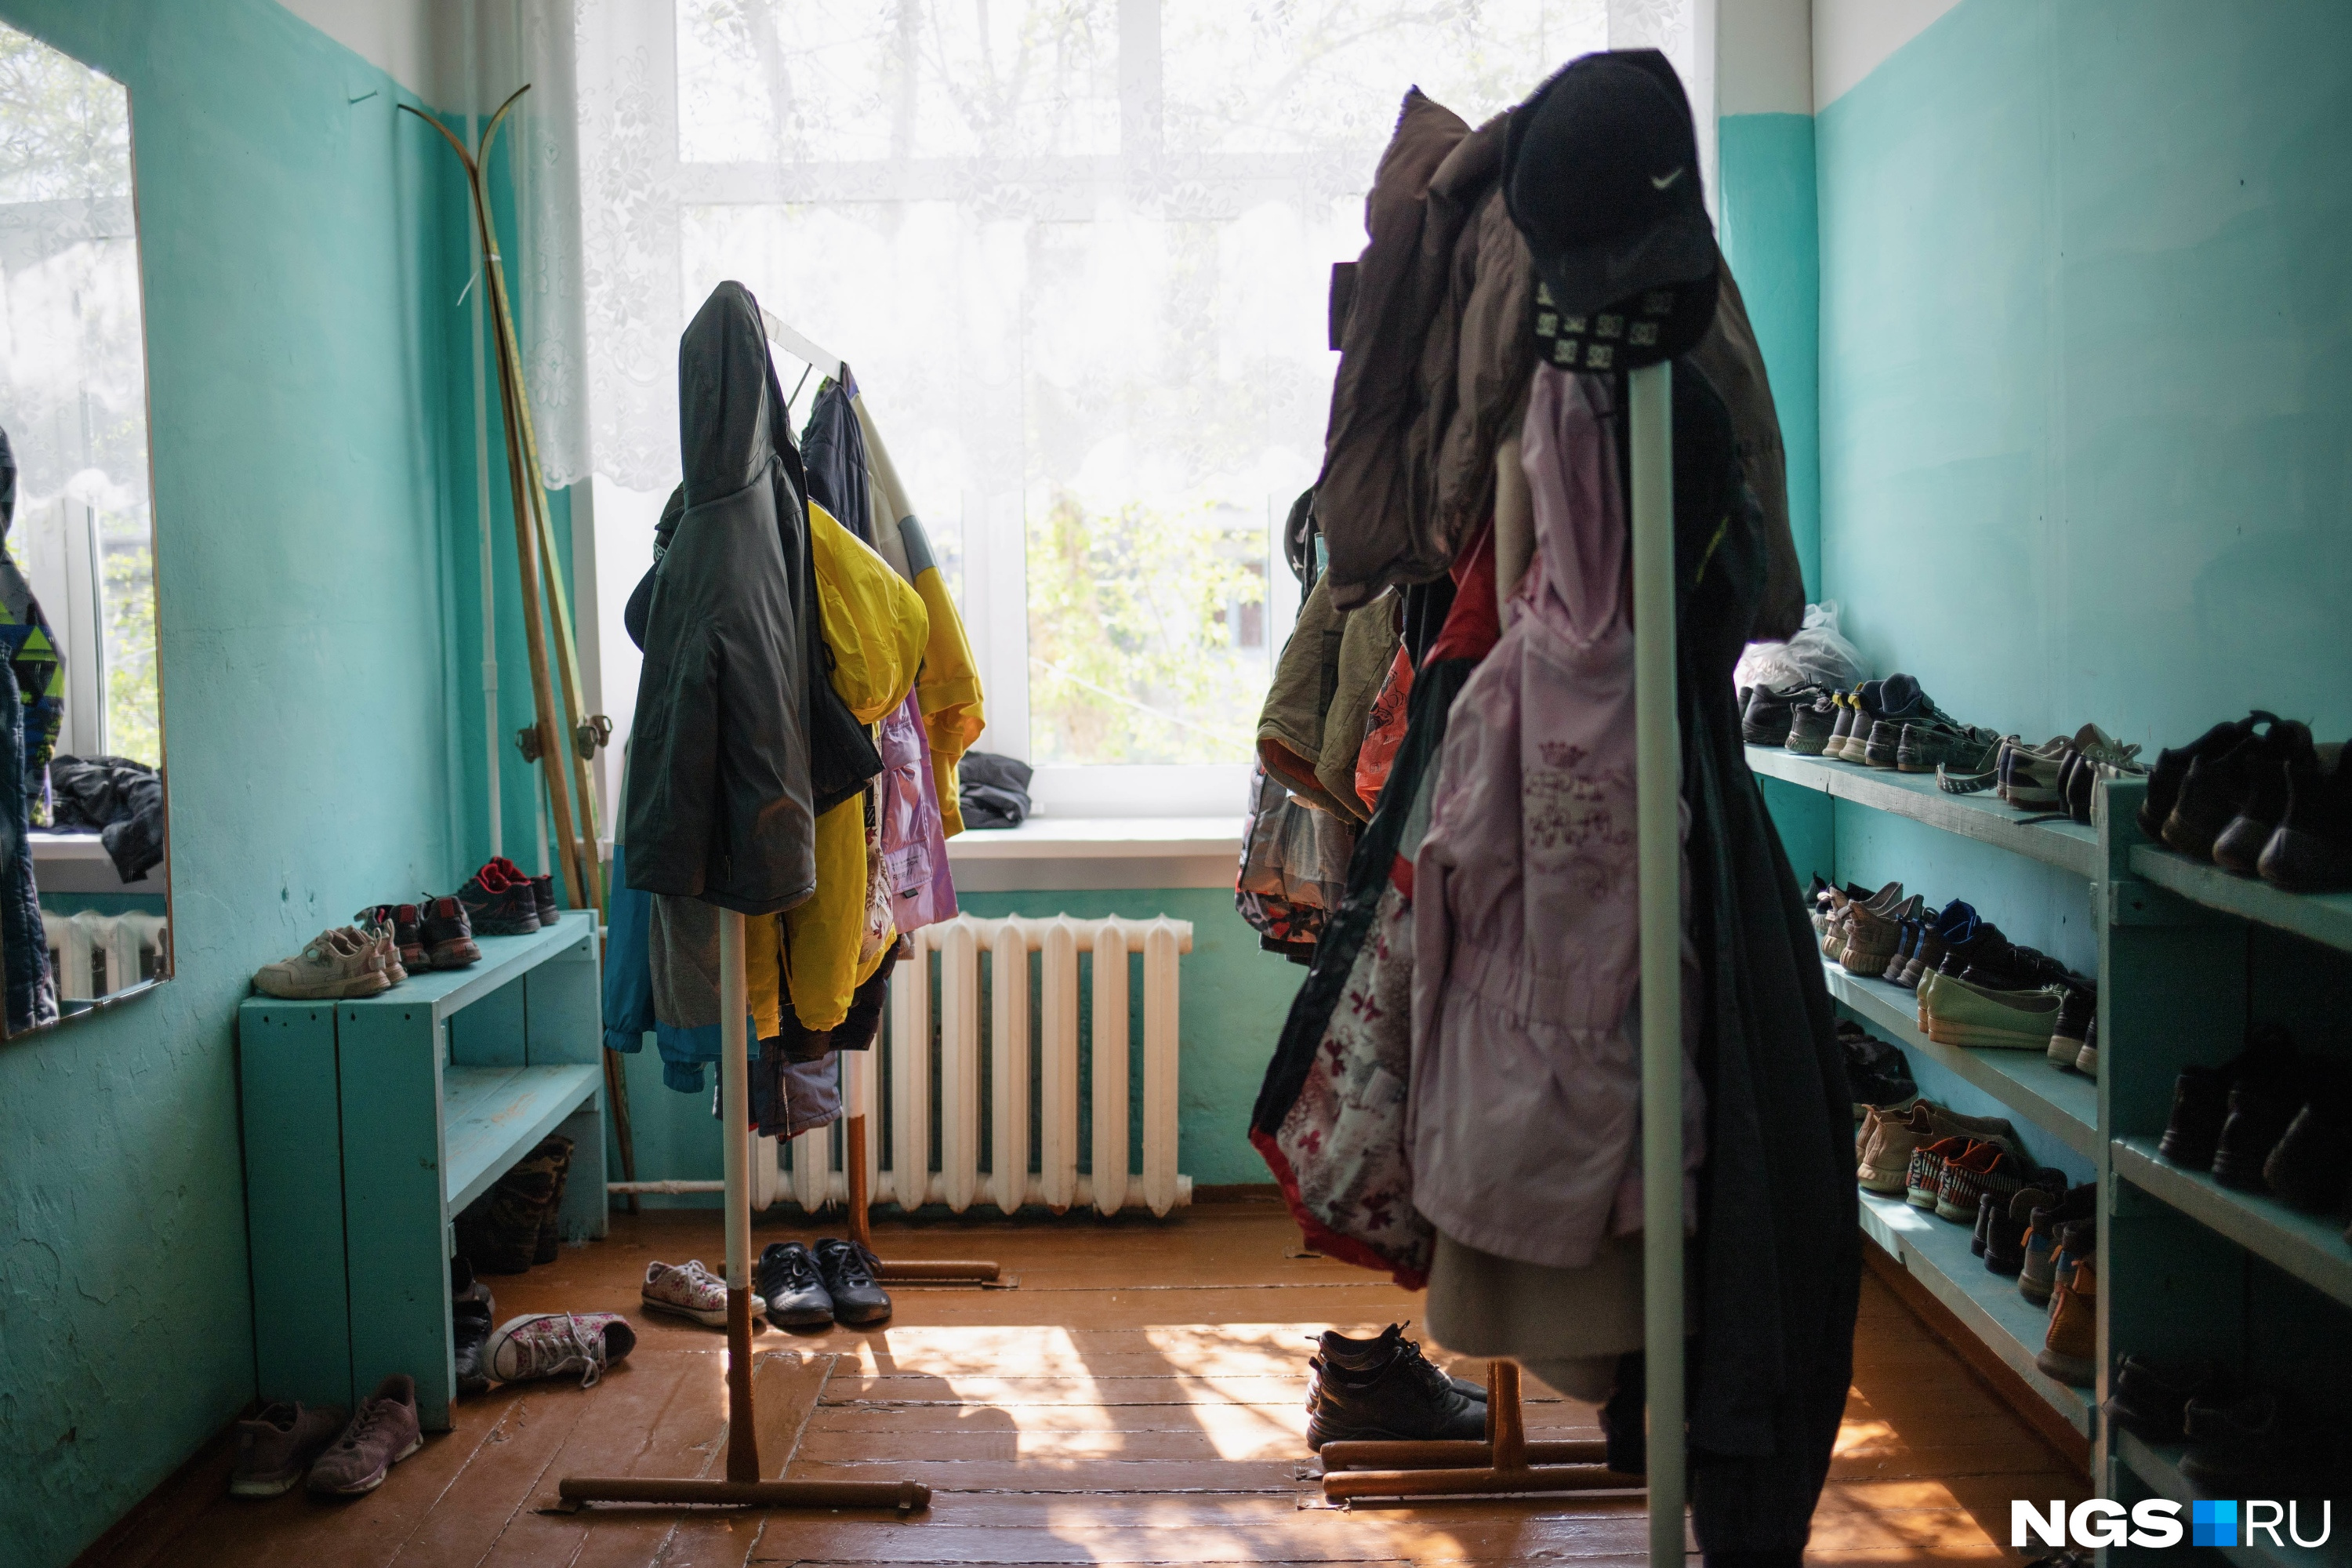 9 детей приезжают в Зудово из соседней Козловки — там уже давно нет школы